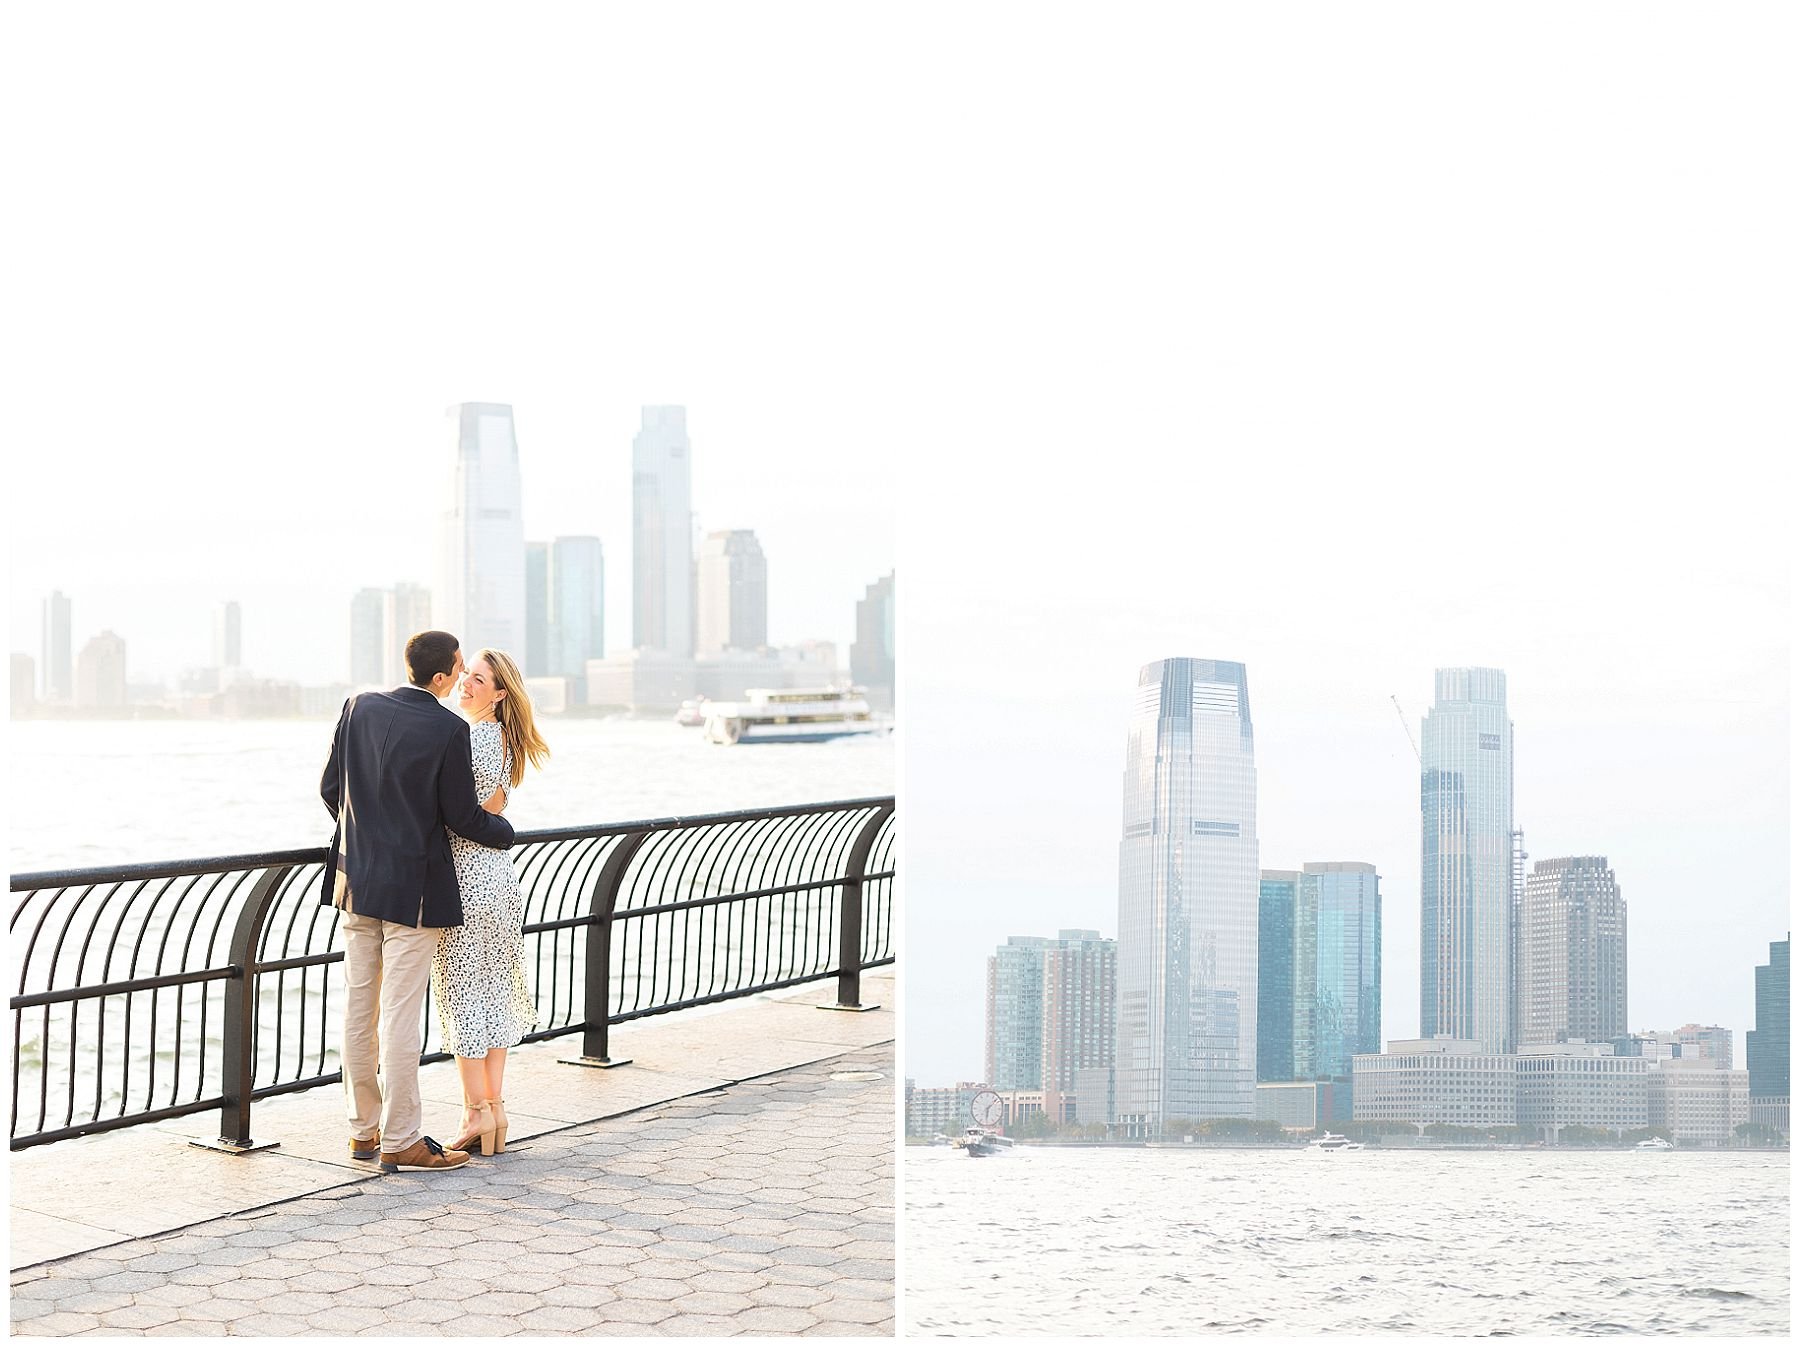 Waterfront lower Manhattan wedding photographer